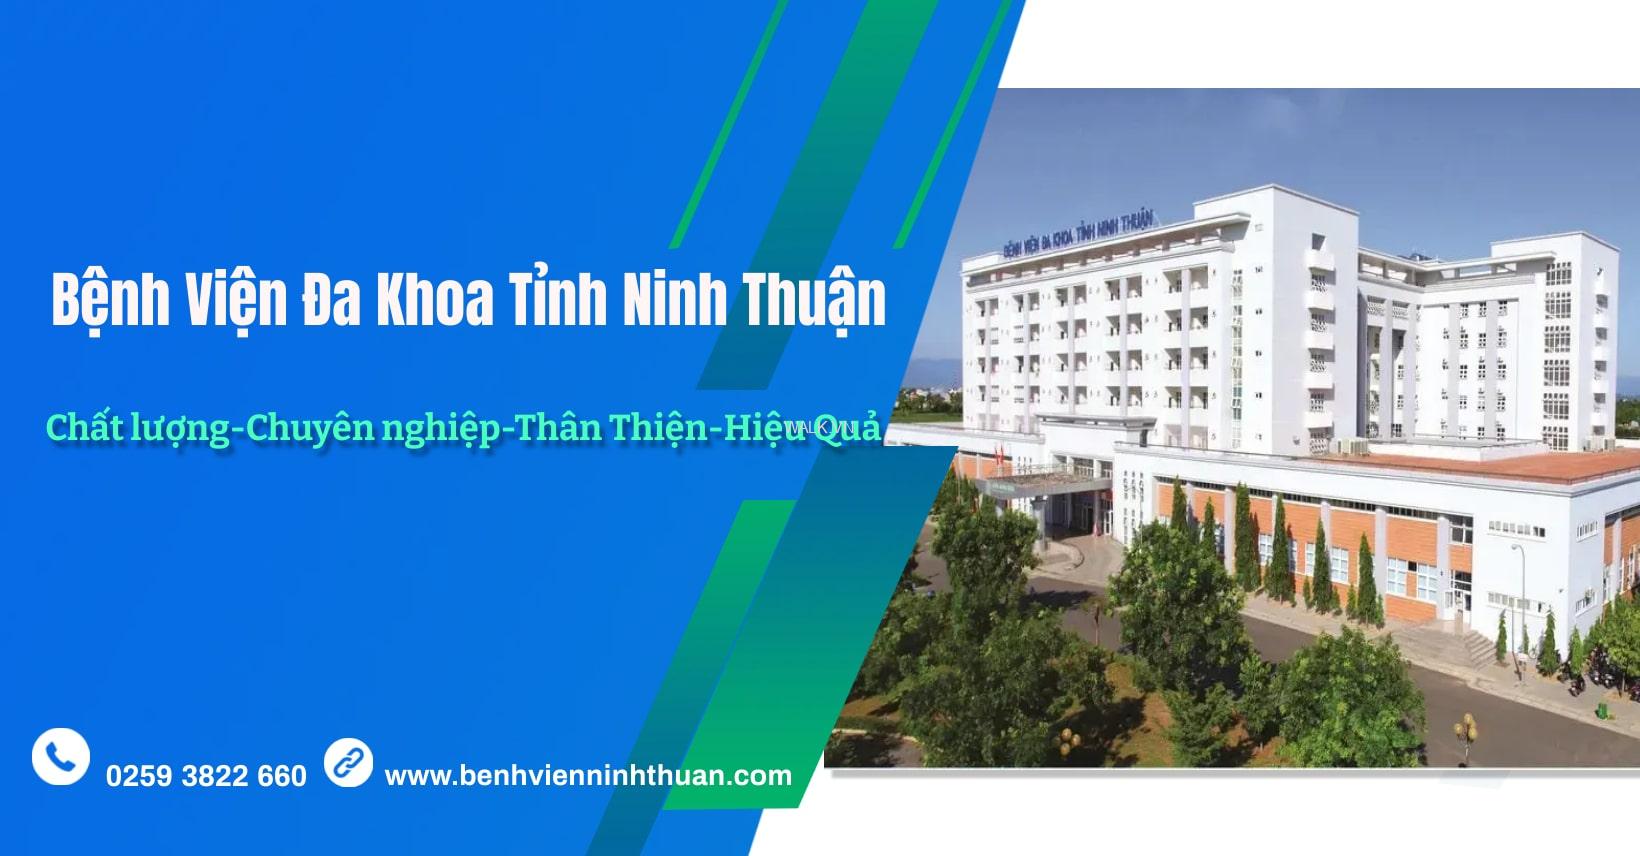 Bệnh Viện Đa Khoa Tỉnh Ninh Thuận